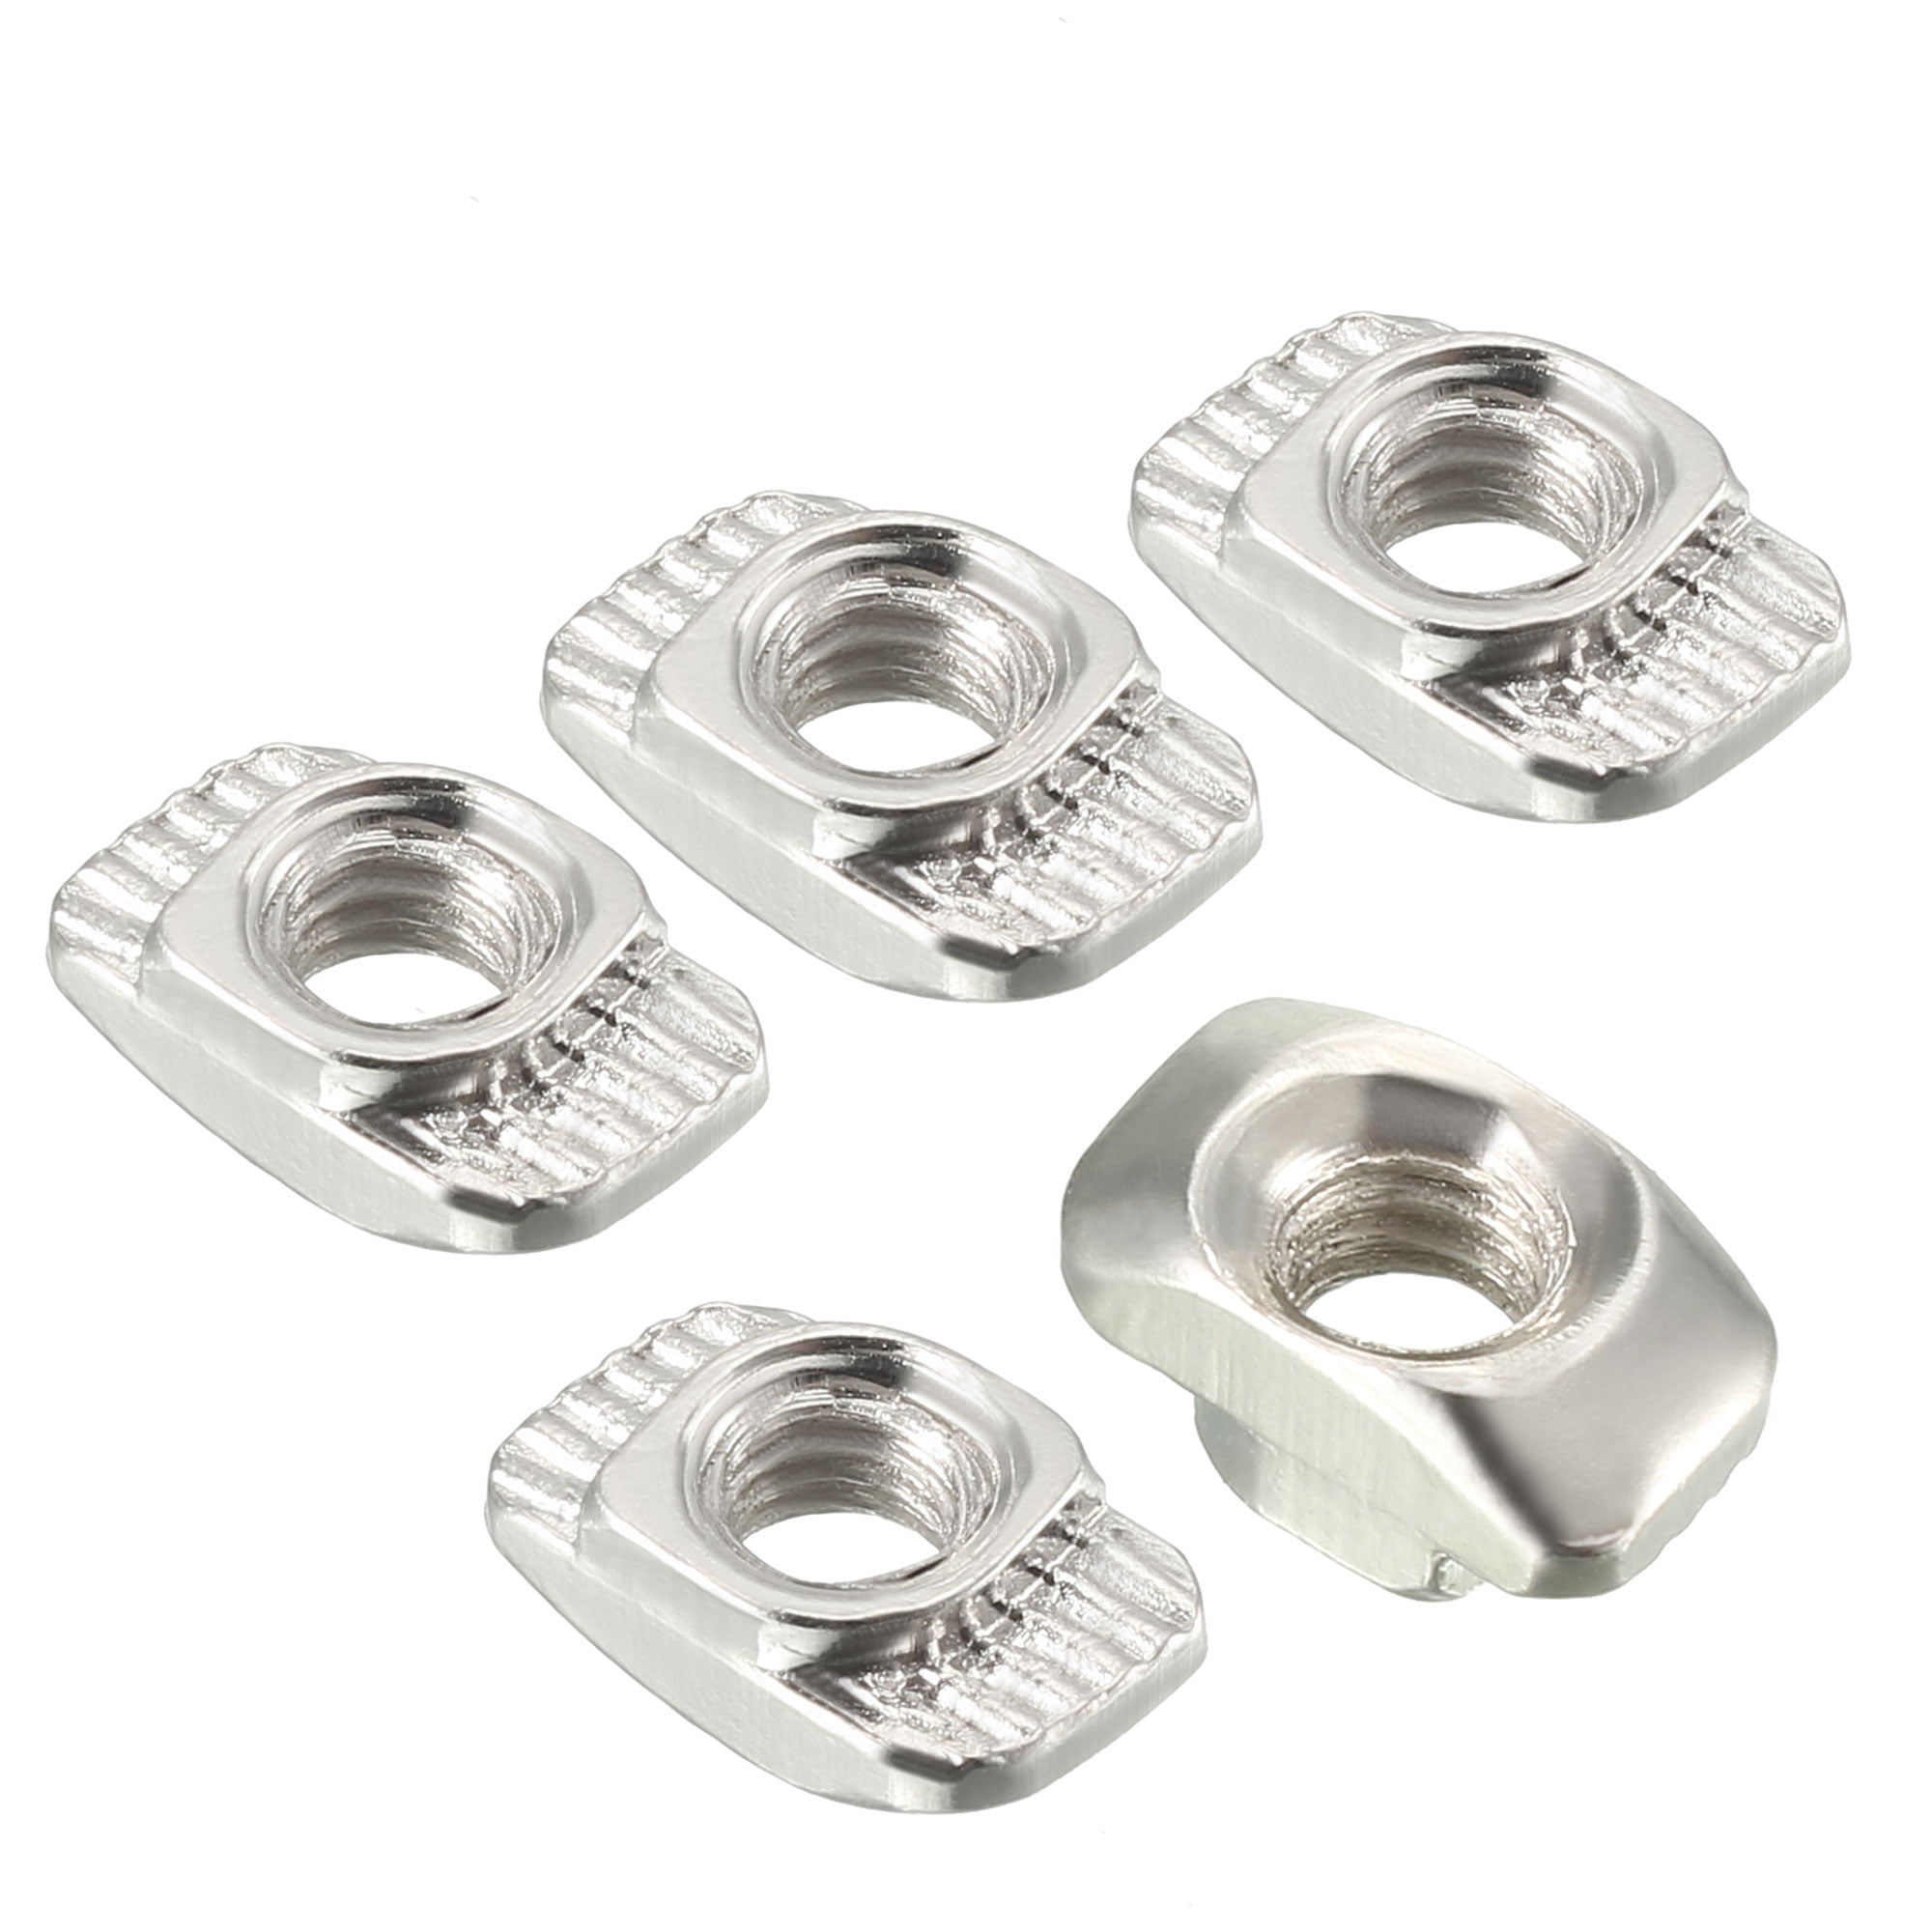 10 pieces Aluminum T-Slot nuts UNC 5/16"-18 